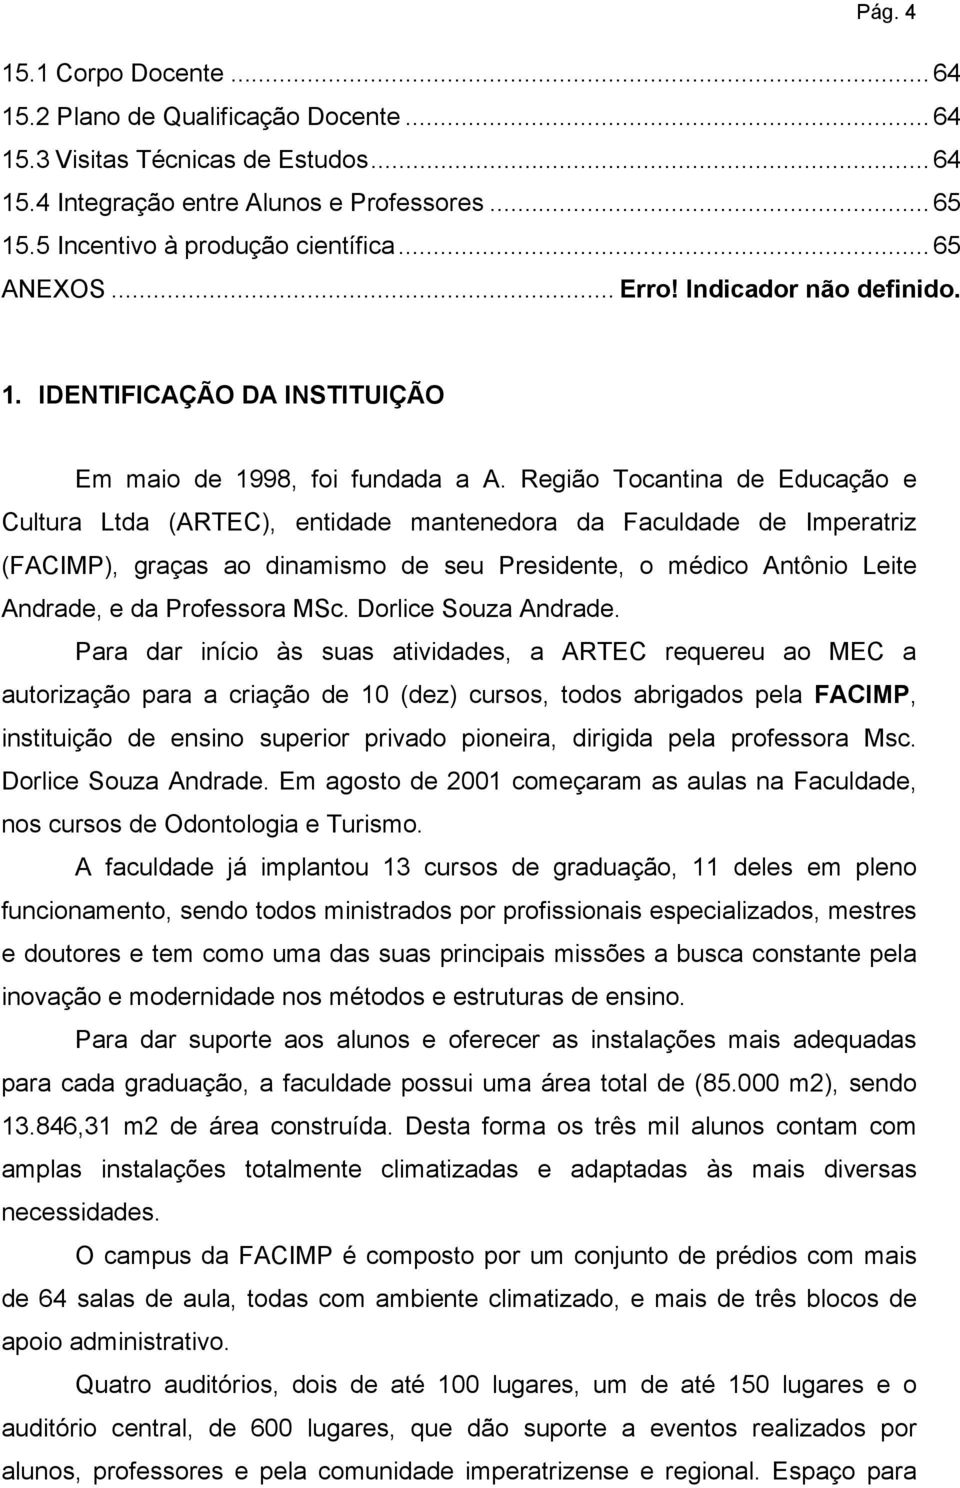 Região Tocantina de Educação e Cultura Ltda (ARTEC), entidade mantenedora da Faculdade de Imperatriz (FACIMP), graças ao dinamismo de seu Presidente, o médico Antônio Leite Andrade, e da Professora